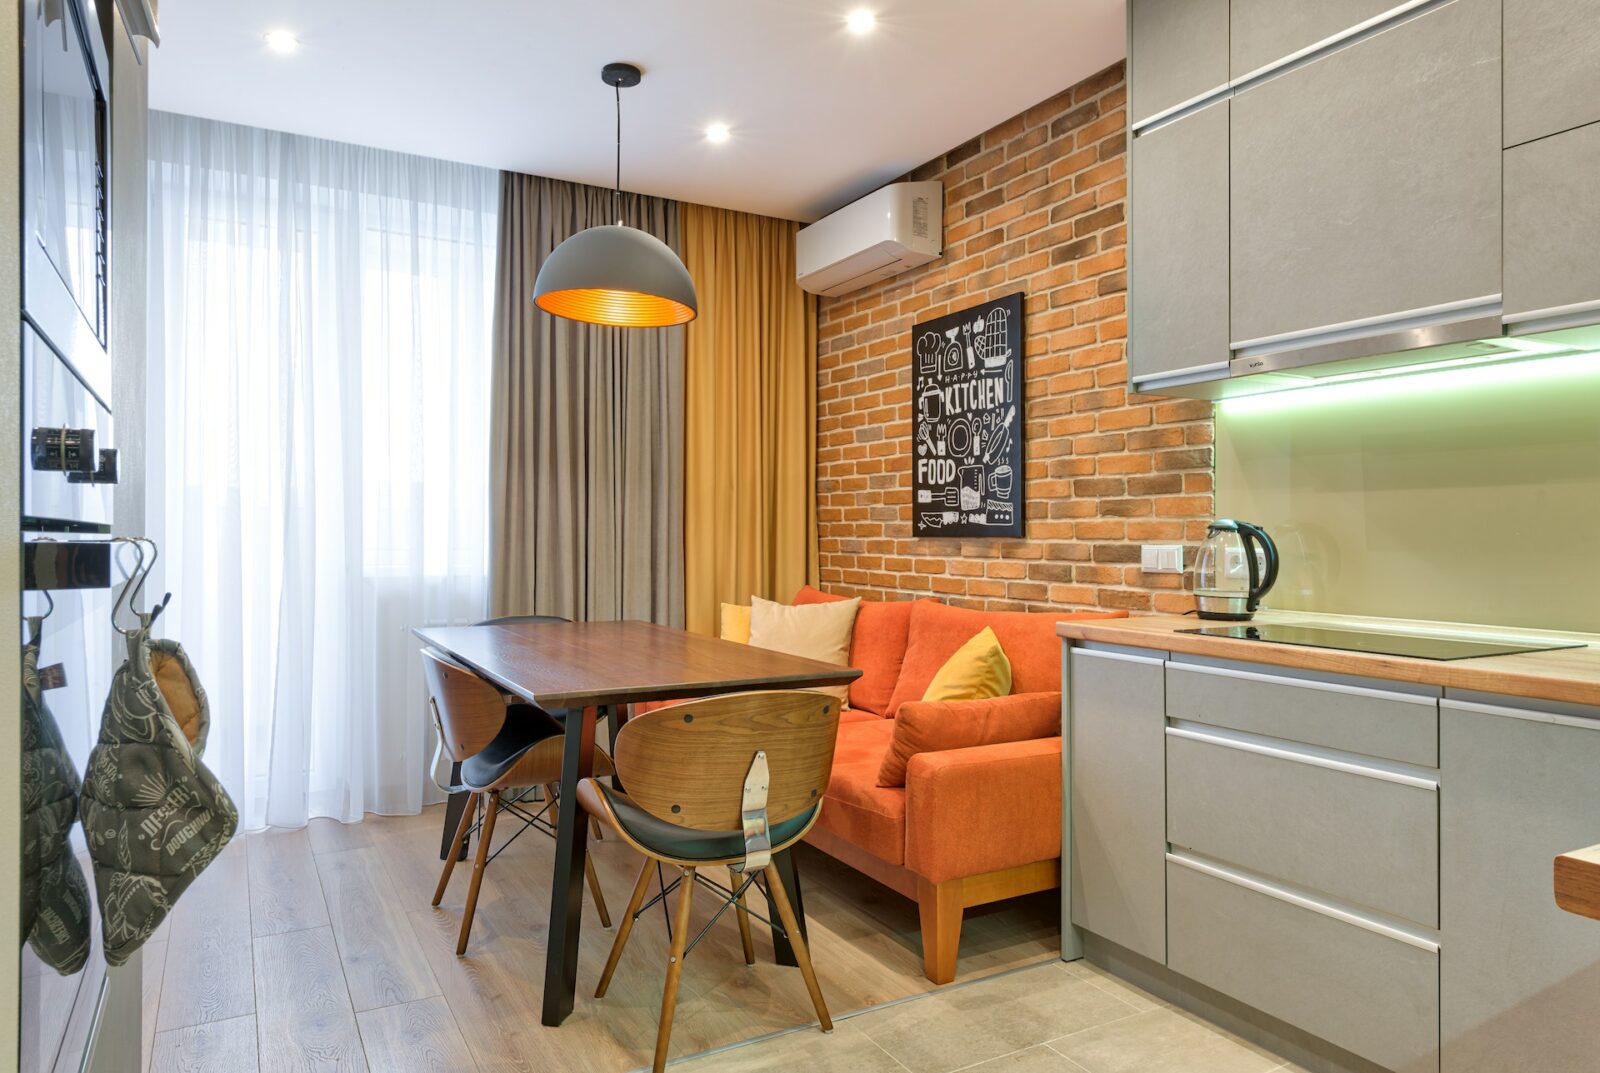 Studio Apartment Kitchen 1600x1073 